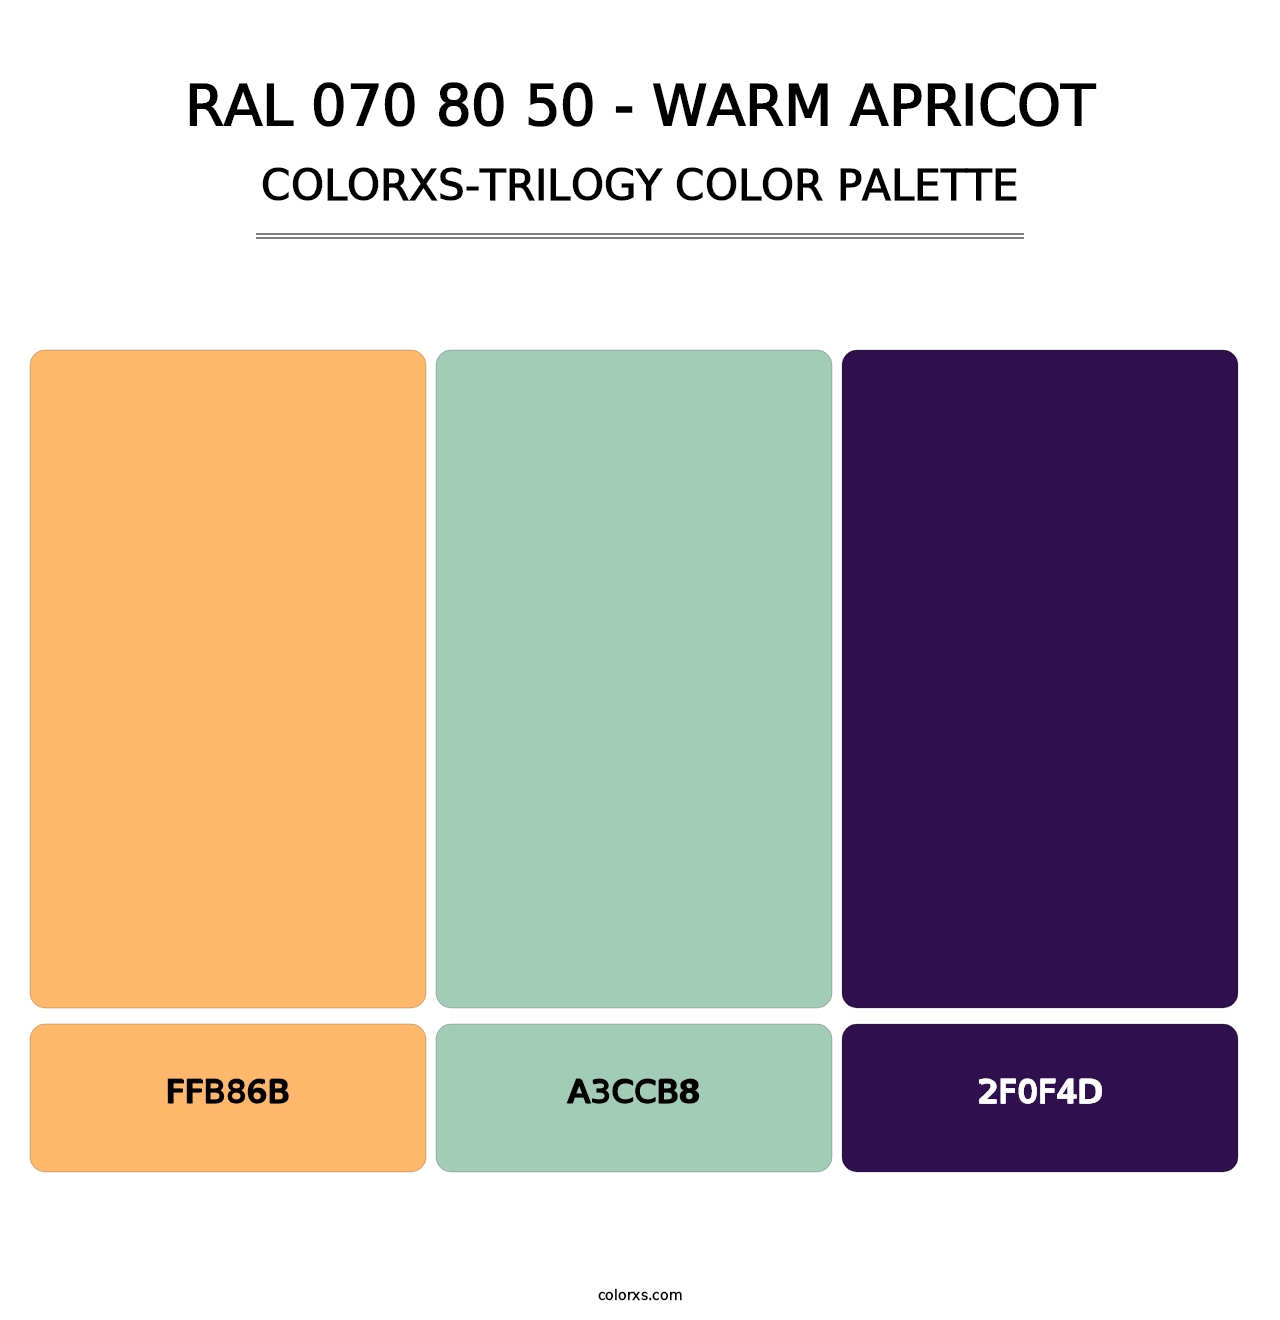 RAL 070 80 50 - Warm Apricot - Colorxs Trilogy Palette